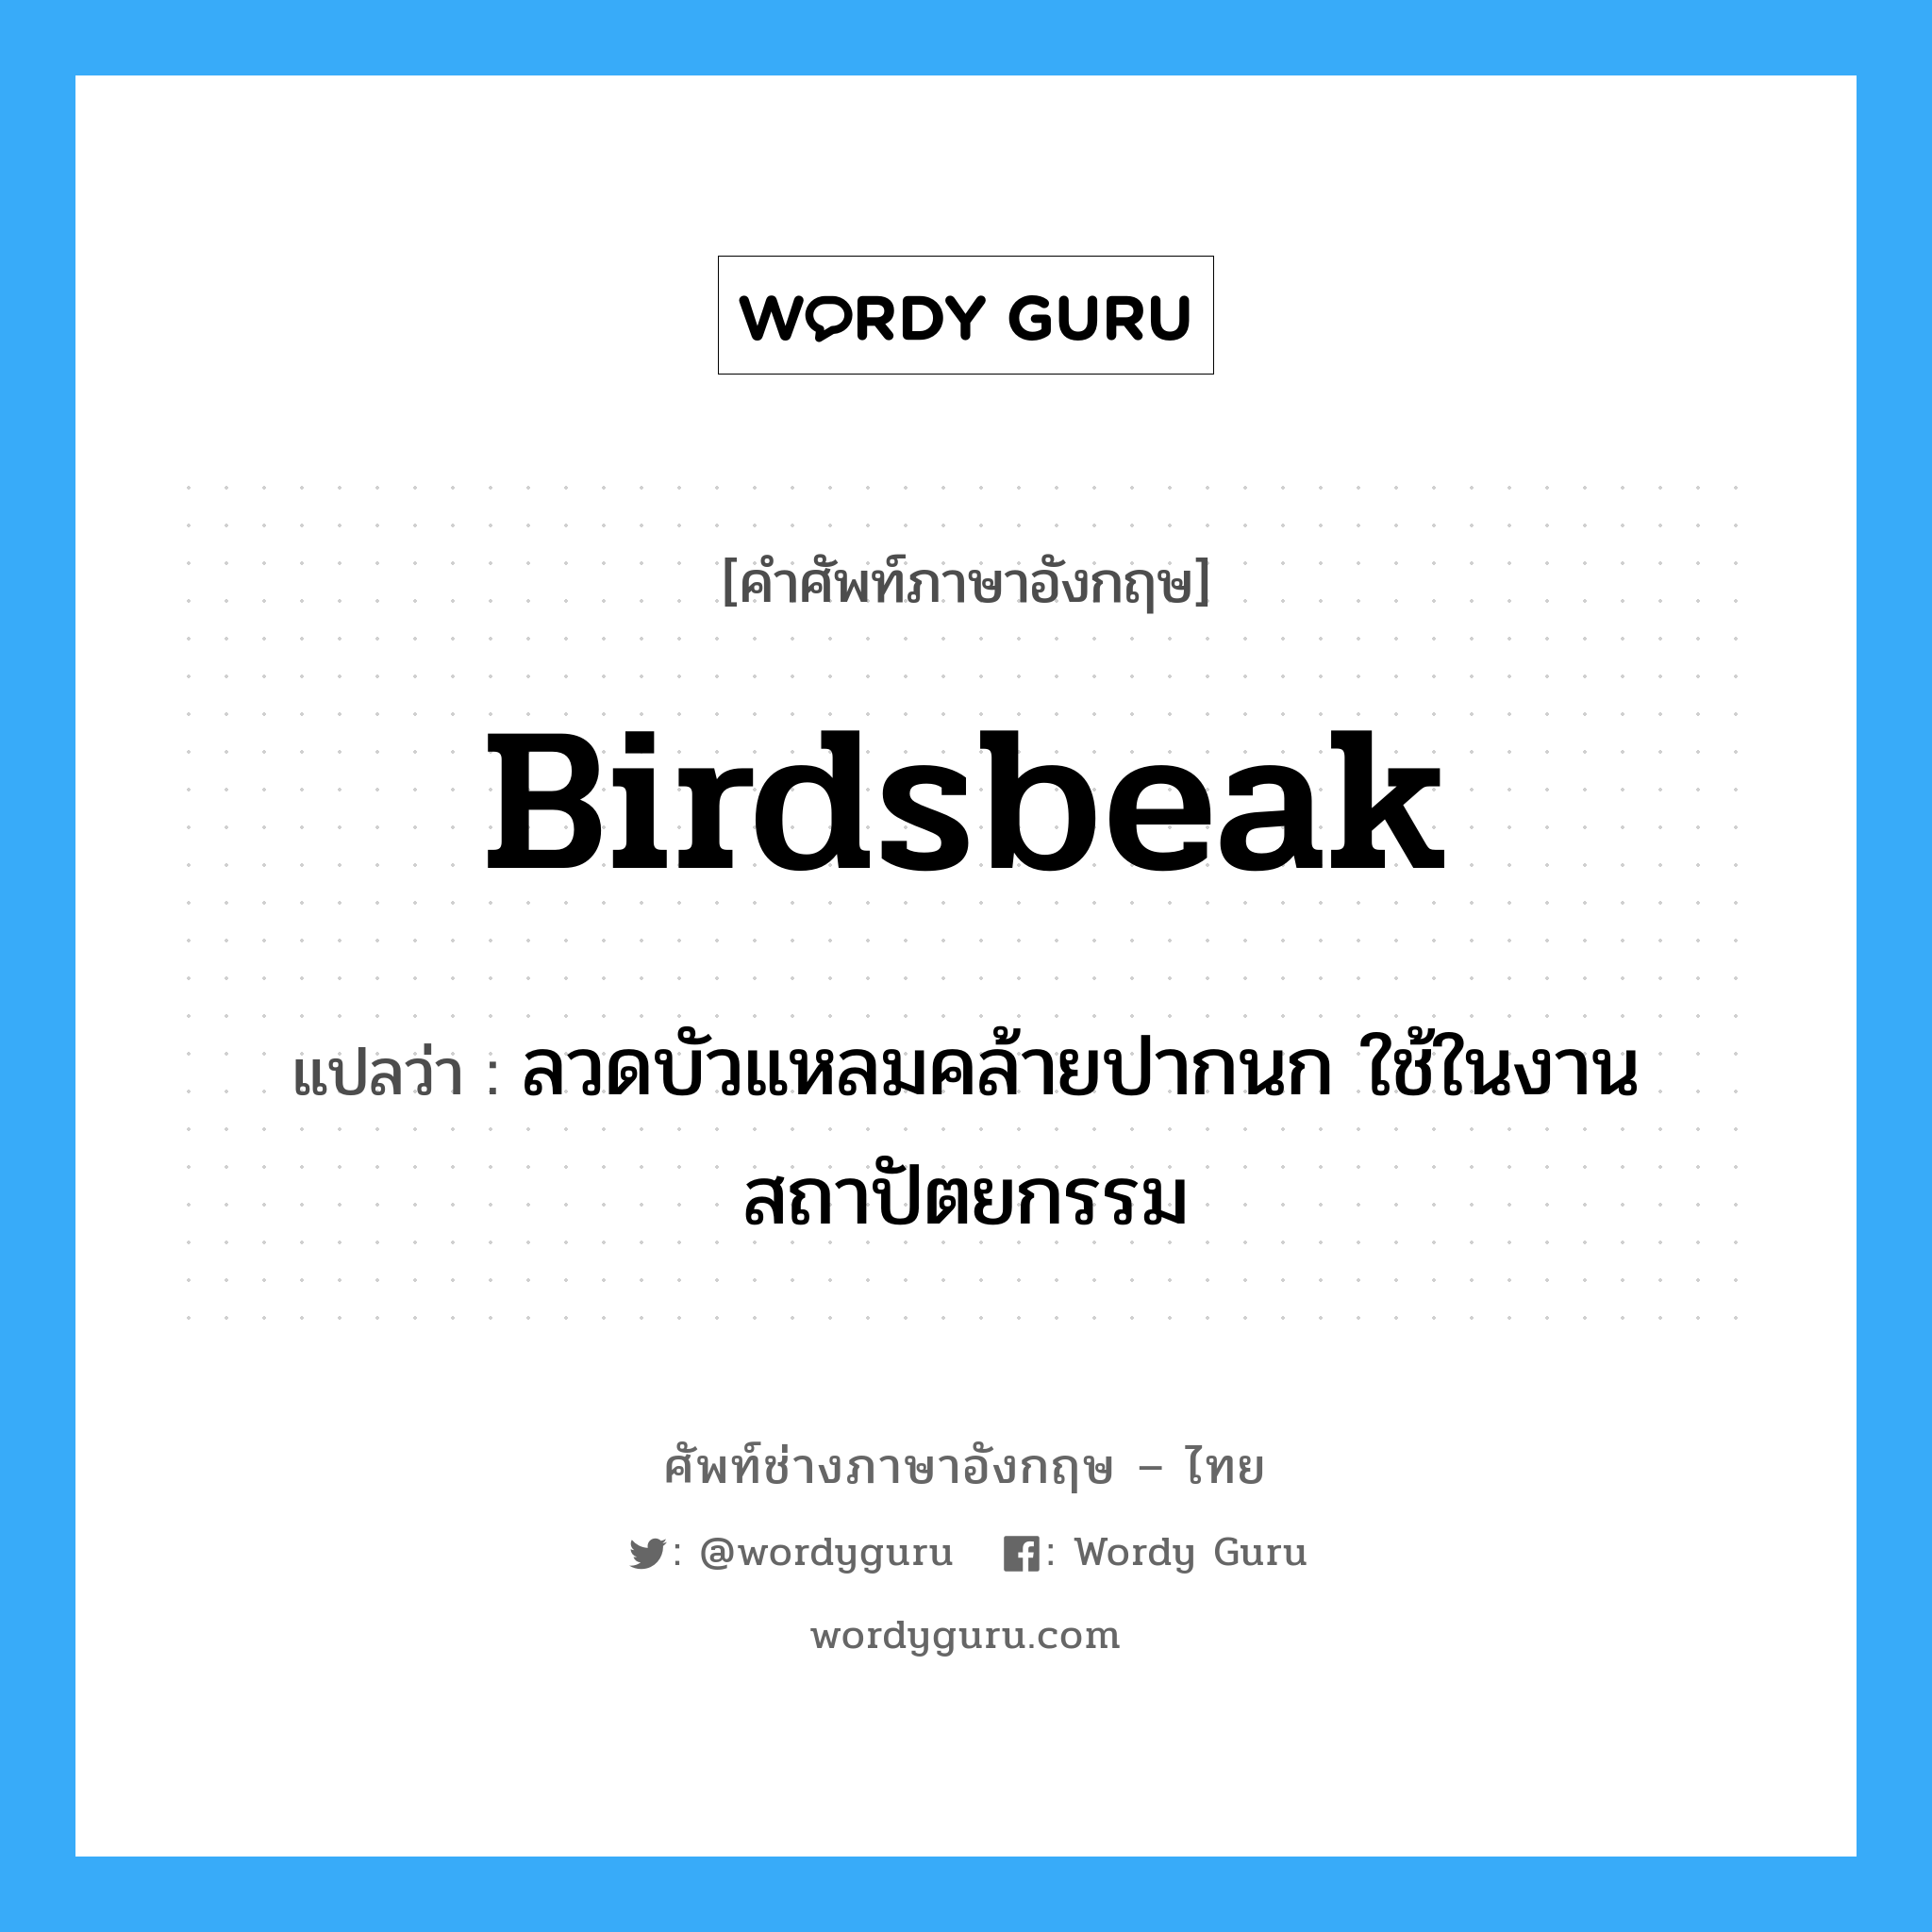 birdsbeak แปลว่า?, คำศัพท์ช่างภาษาอังกฤษ - ไทย birdsbeak คำศัพท์ภาษาอังกฤษ birdsbeak แปลว่า ลวดบัวแหลมคล้ายปากนก ใช้ในงานสถาปัตยกรรม